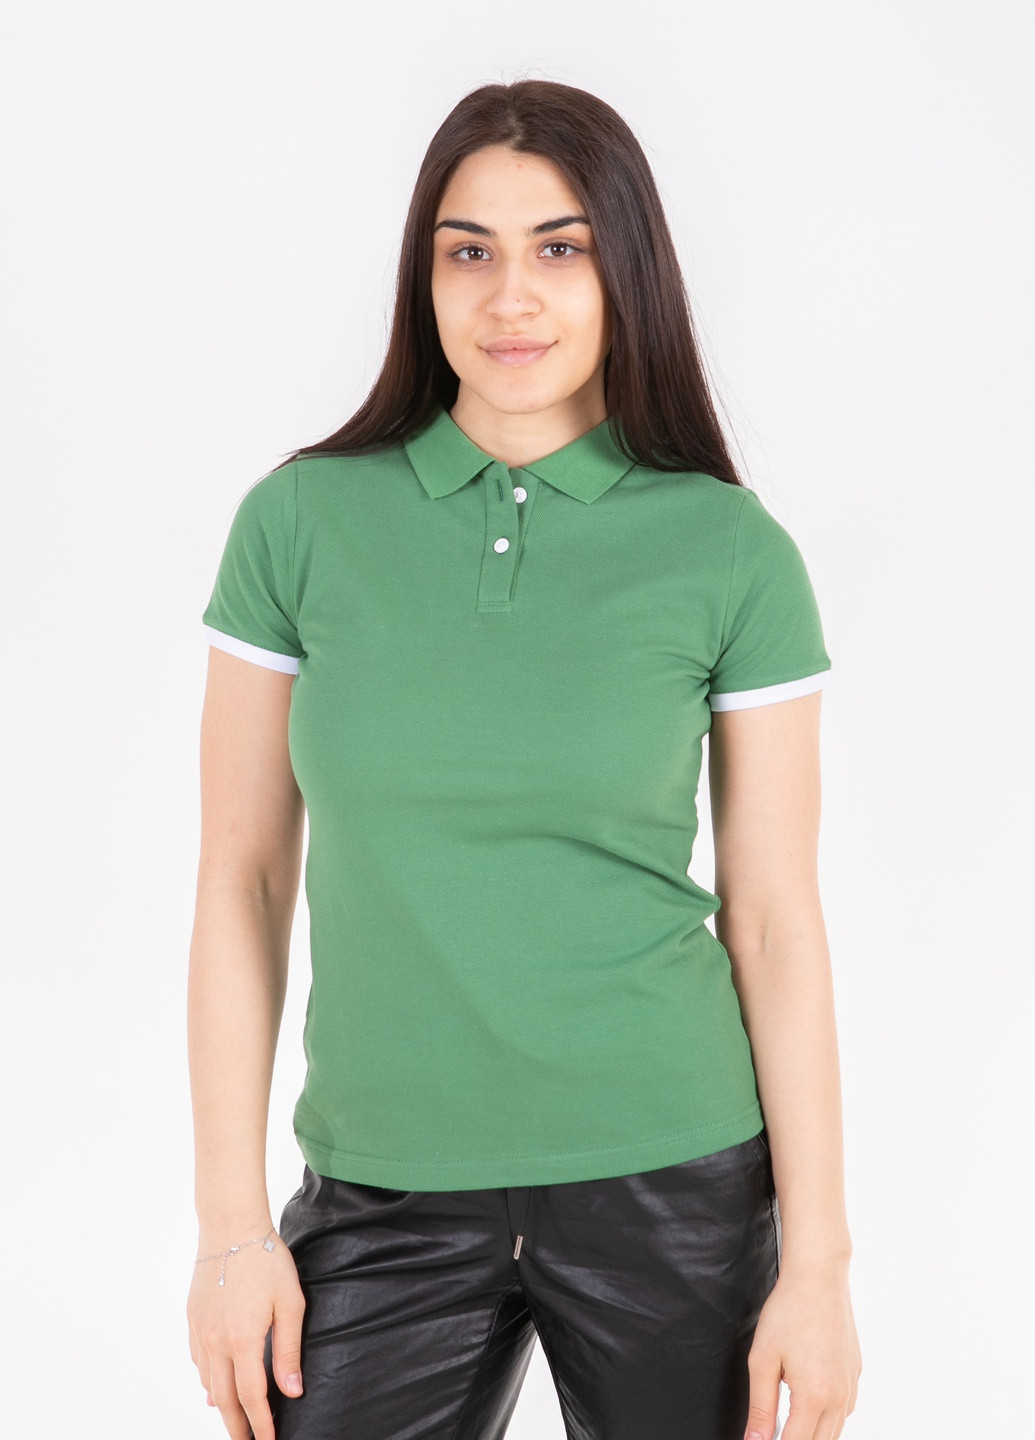 Зеленая женская футболка-футболка поло женская TvoePolo однотонная